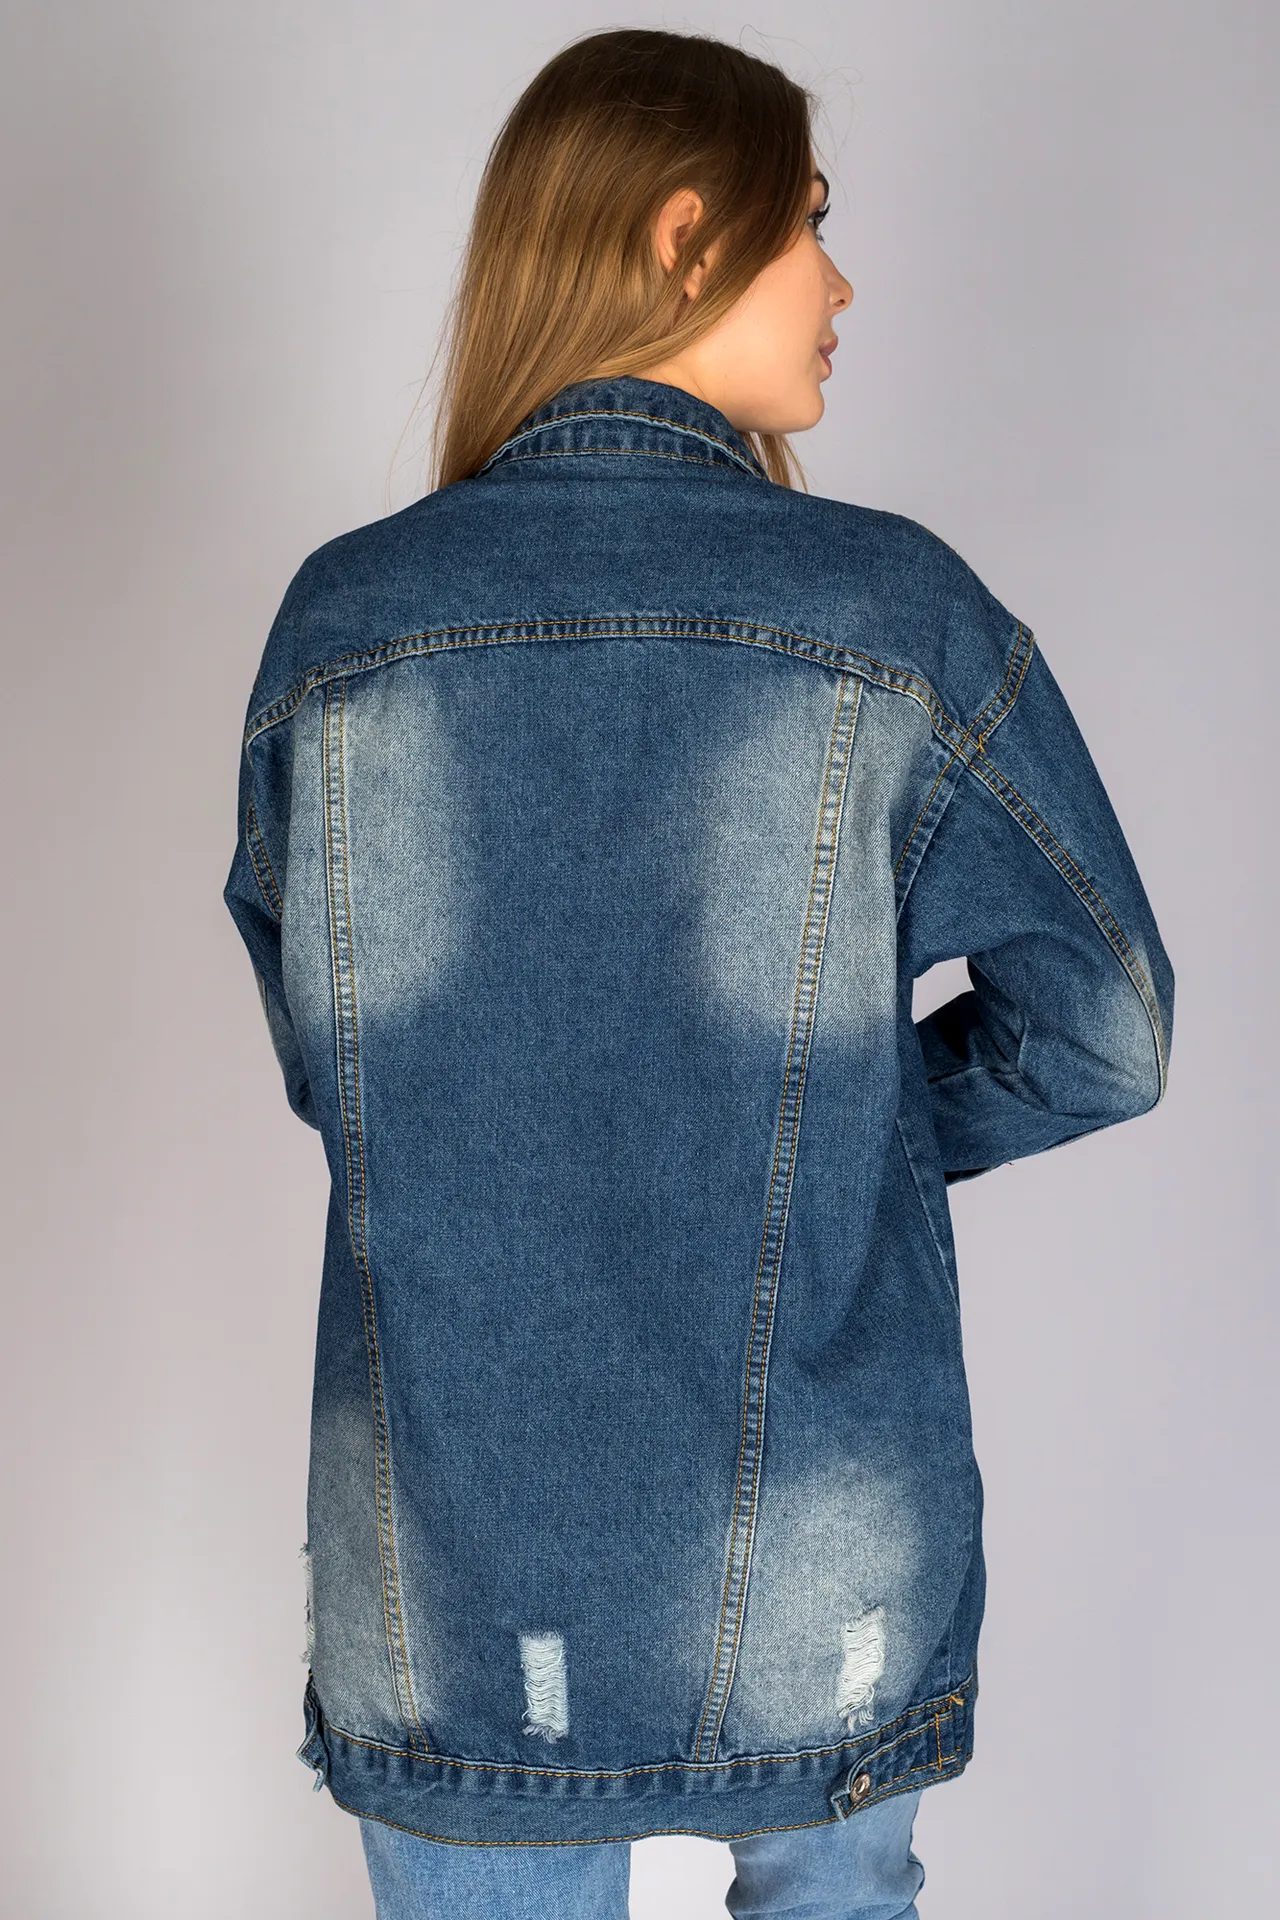 Удлиненная джинсовая куртка женская оптом